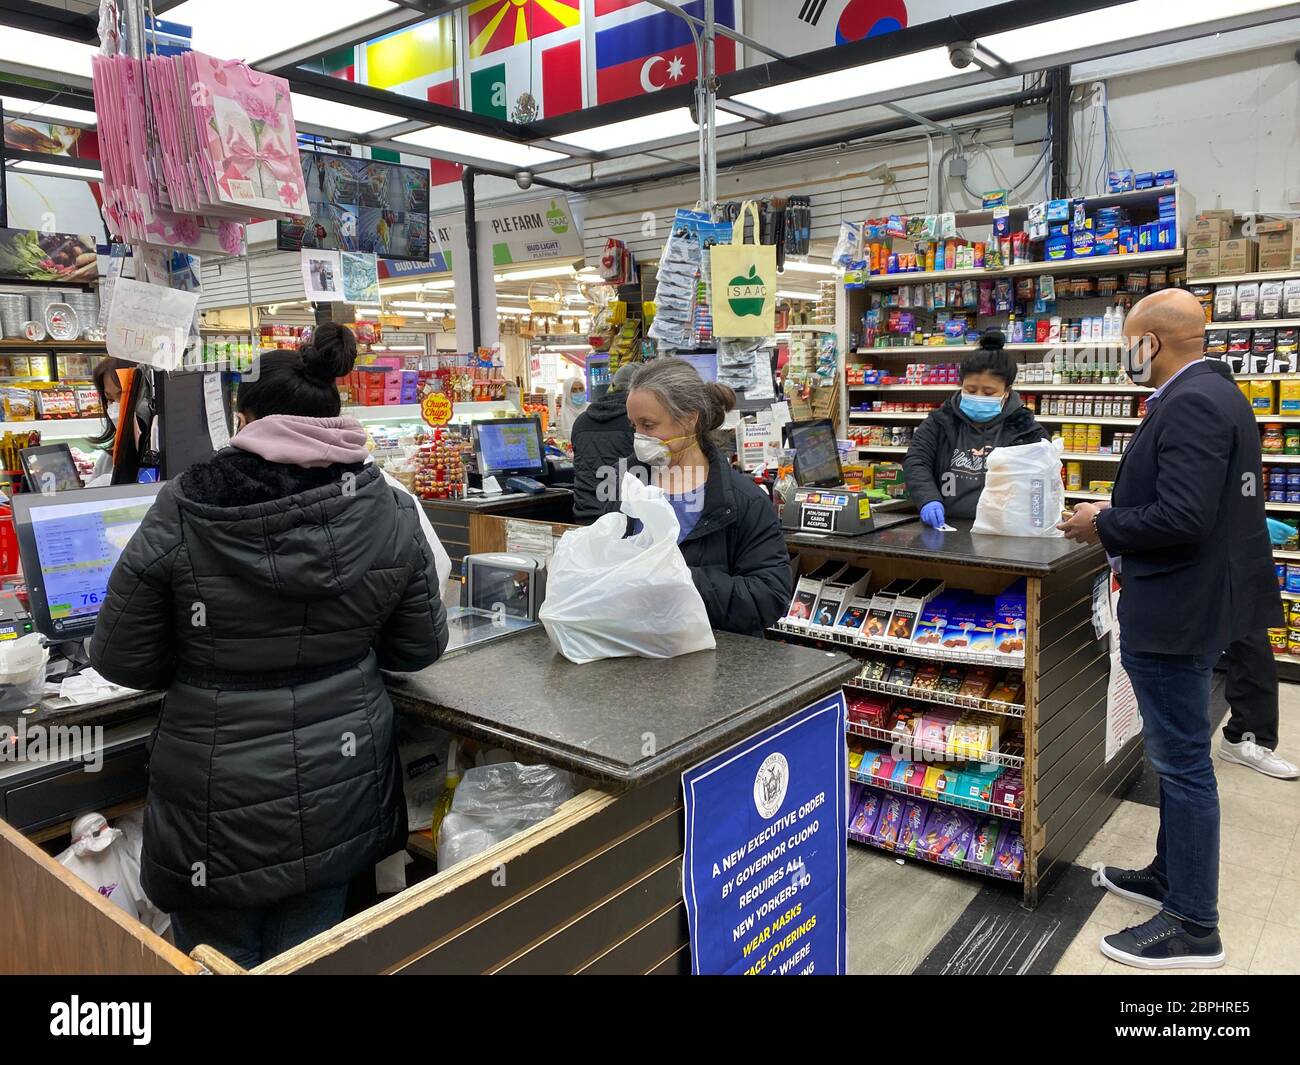 Während der Pandemie von Covid-19 im Stadtteil Kensington in Brooklyn, New York, kaufen Menschen auf einem Nachbarschaftsmarkt Lebensmittel ein. Stockfoto